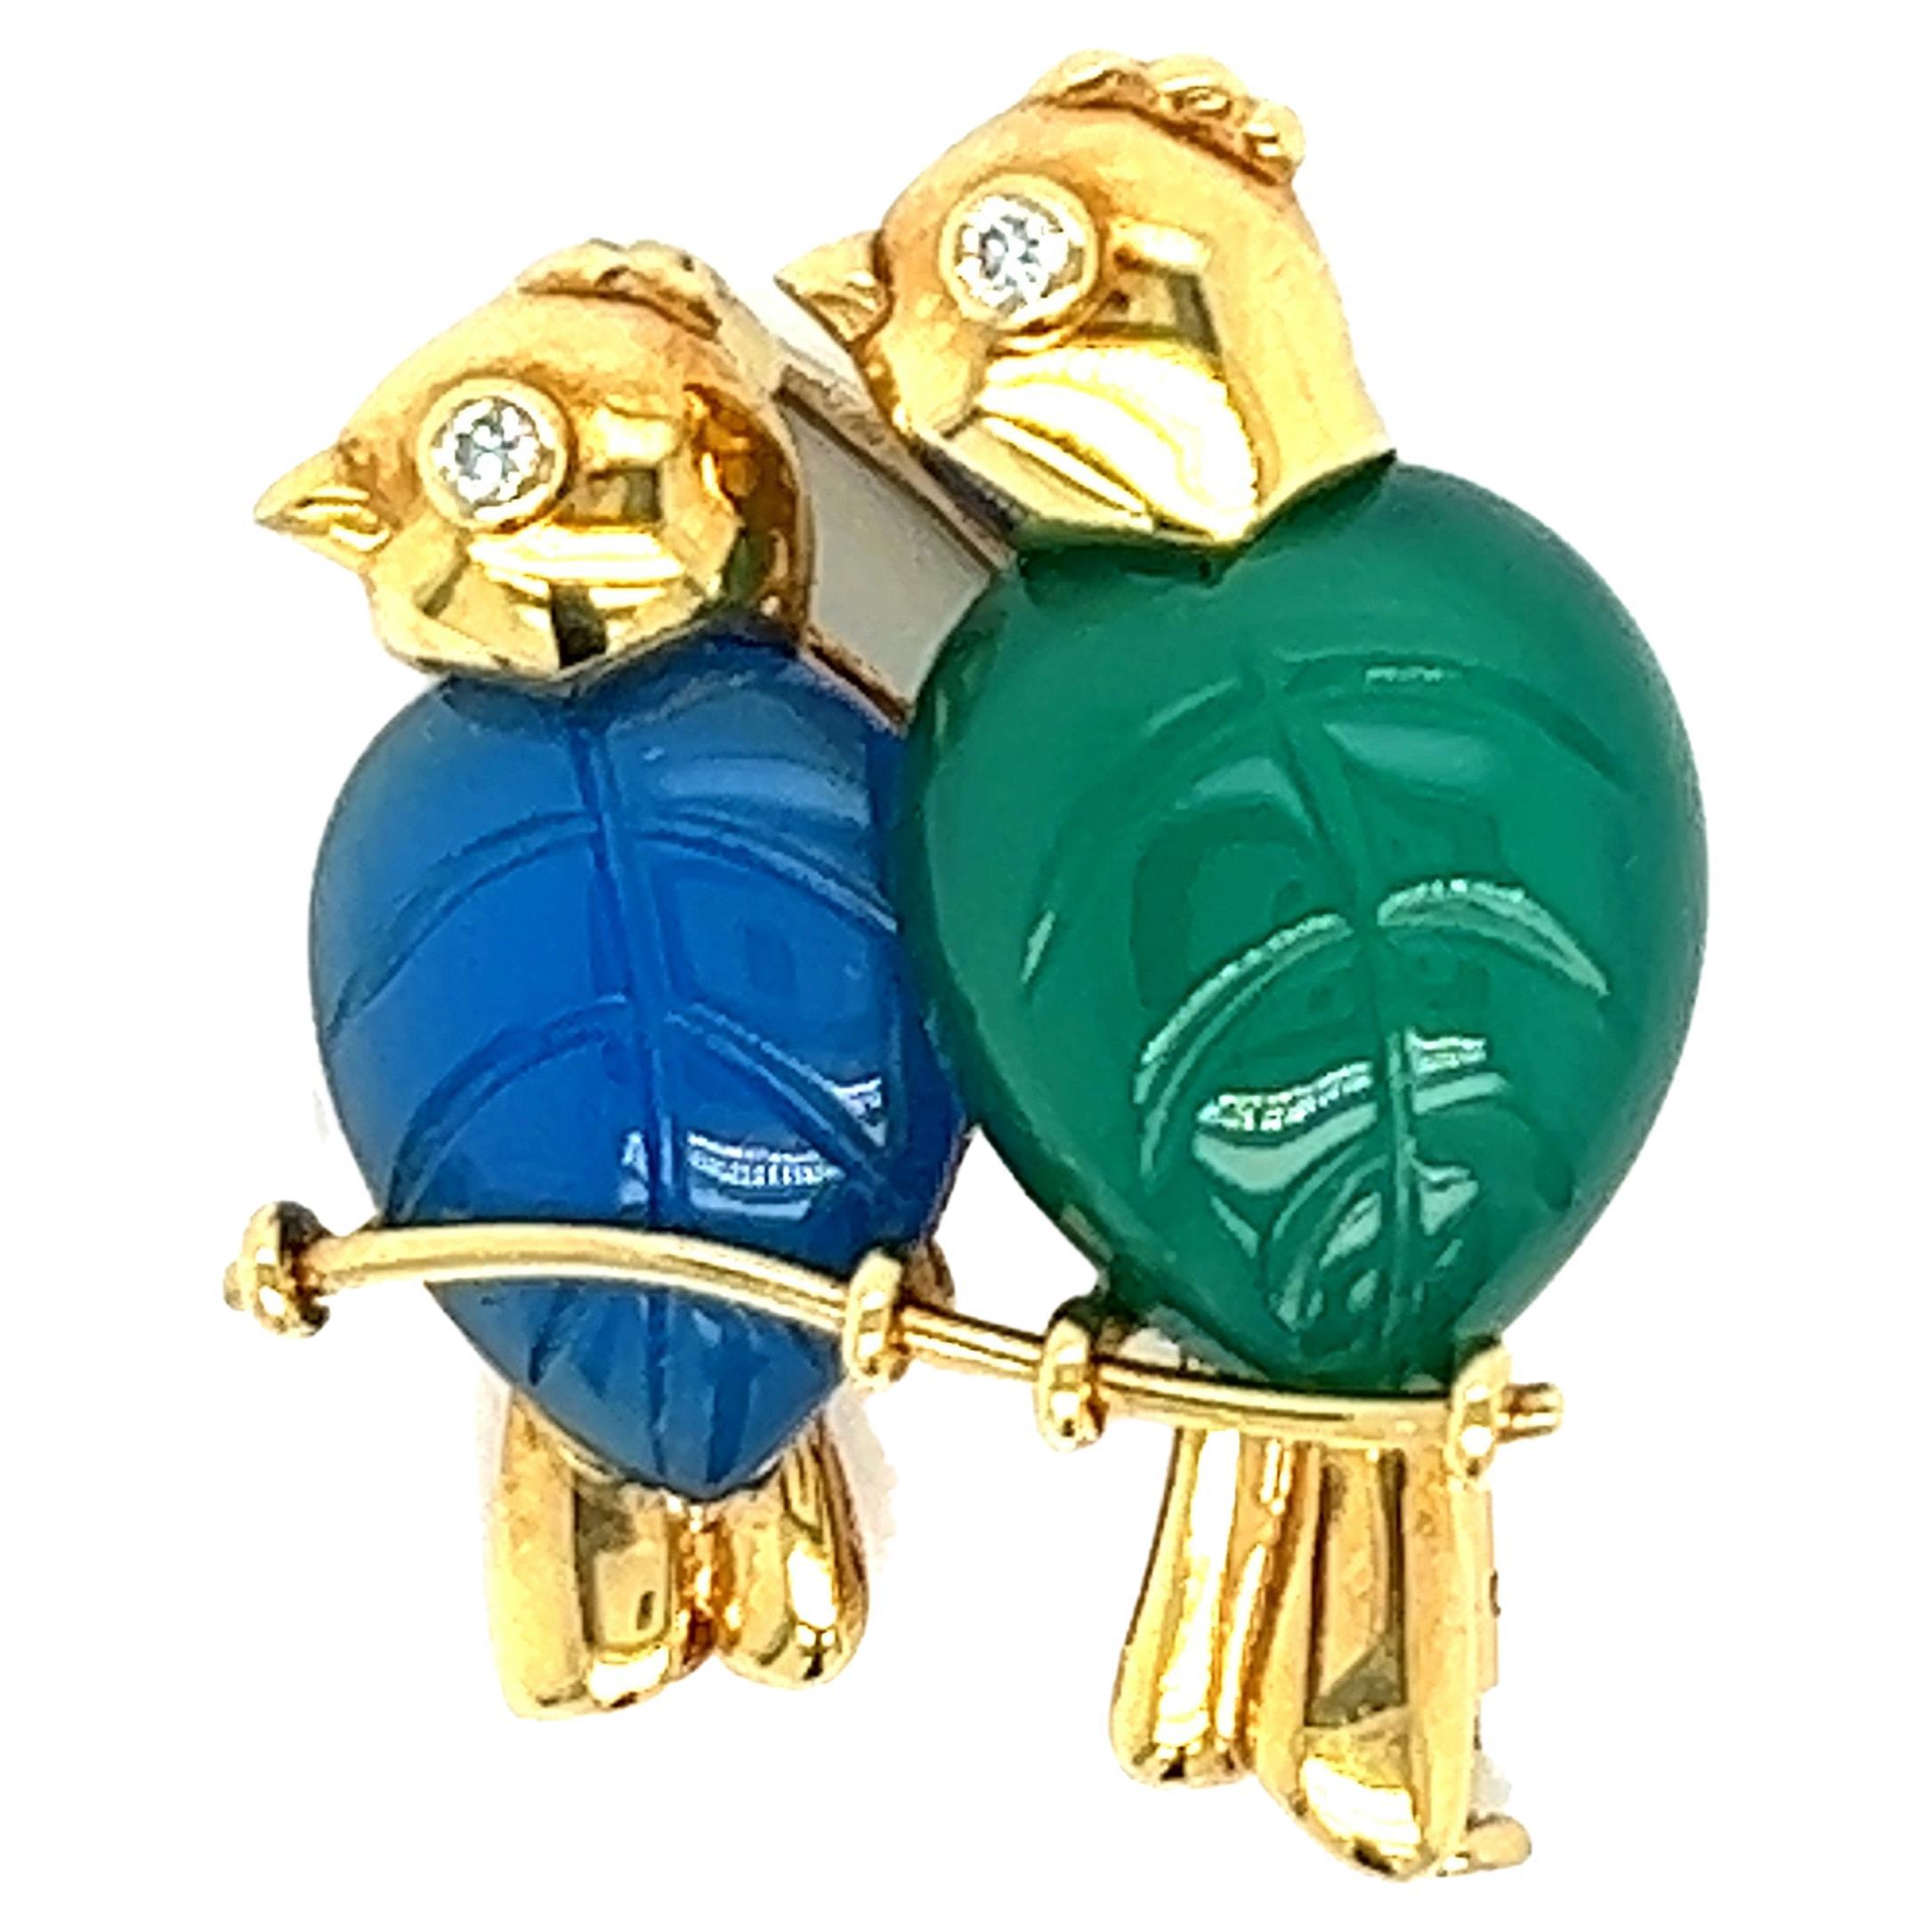 Broche moineau de Cartier

Paire d'oiseaux perchés formés en calcédoine bleue et verte sculptée  (13 x 10,5 mm et 14 x 11 mm) avec deux diamants taille brillant pour les yeux (0,05 carat) ; marqué Cartier 1991, 18k, B53023 

Taille : largeur 2,3 cm,